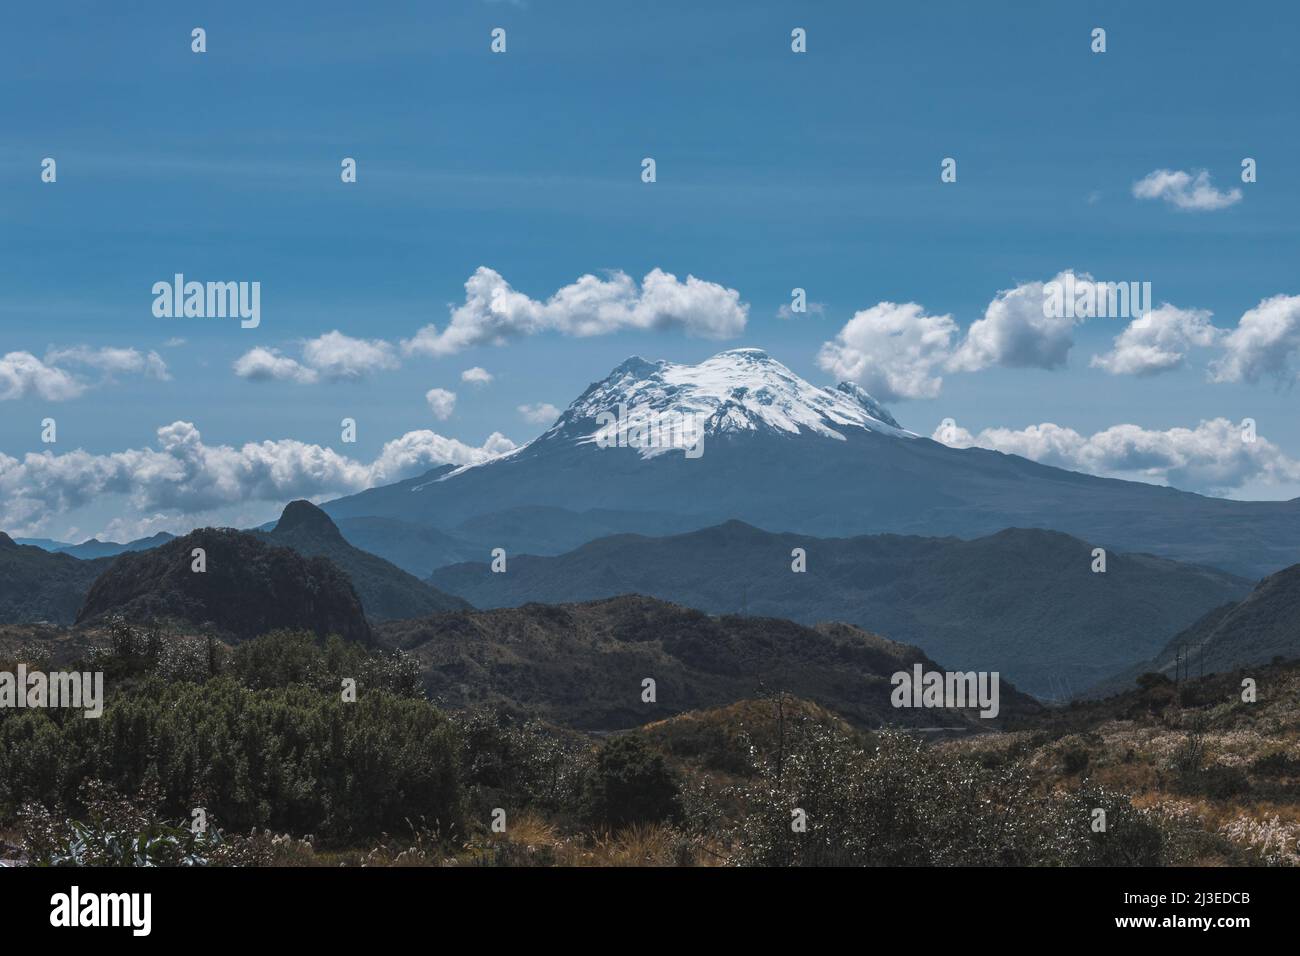 Volcán Antisana situado en la cordillera de los Andes en las tierras altas del Ecuador en América del Sur. Paisaje de las tierras altas del Ecuador Foto de stock